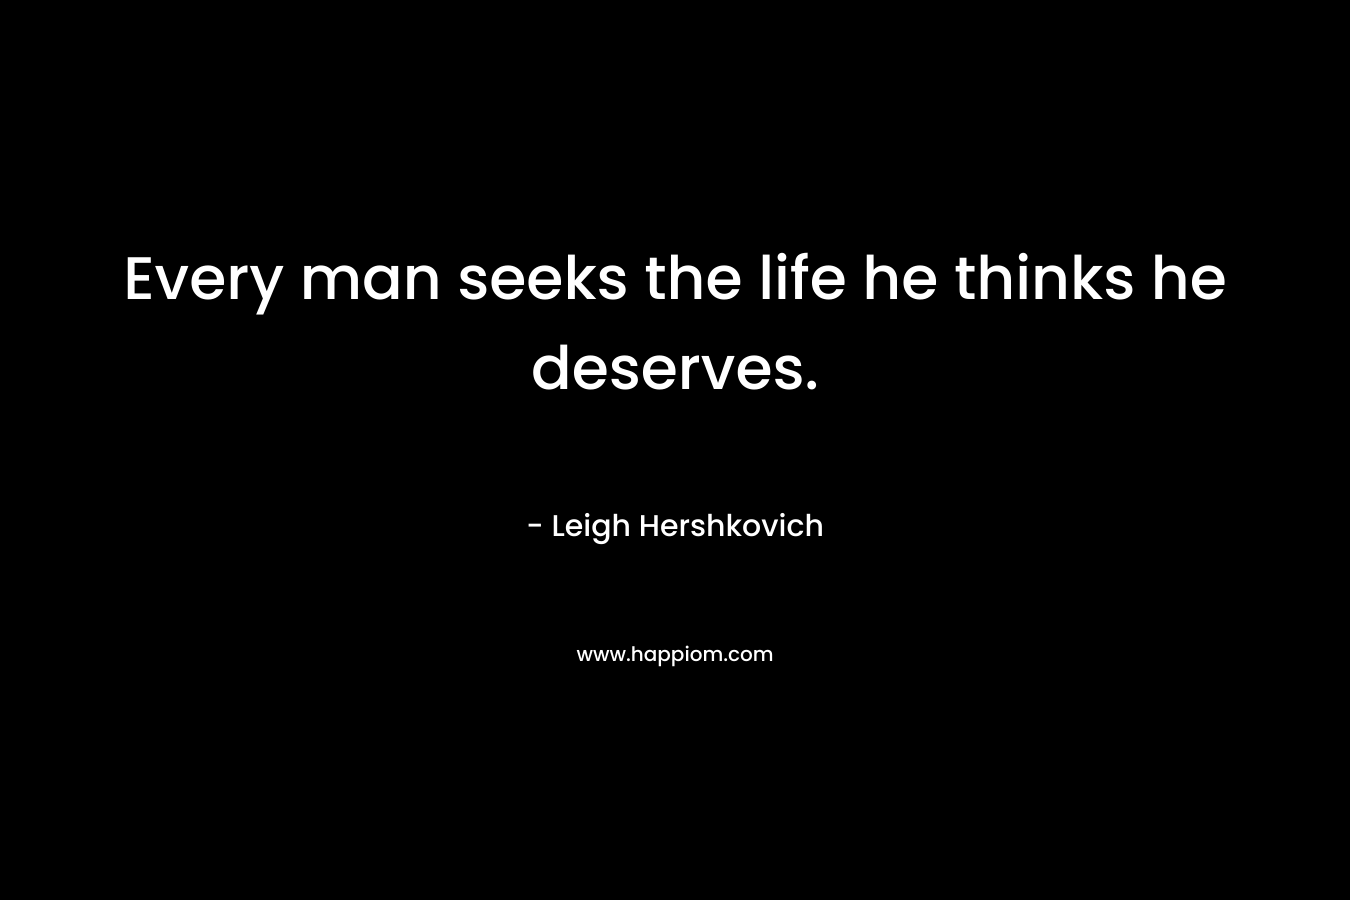 Every man seeks the life he thinks he deserves.